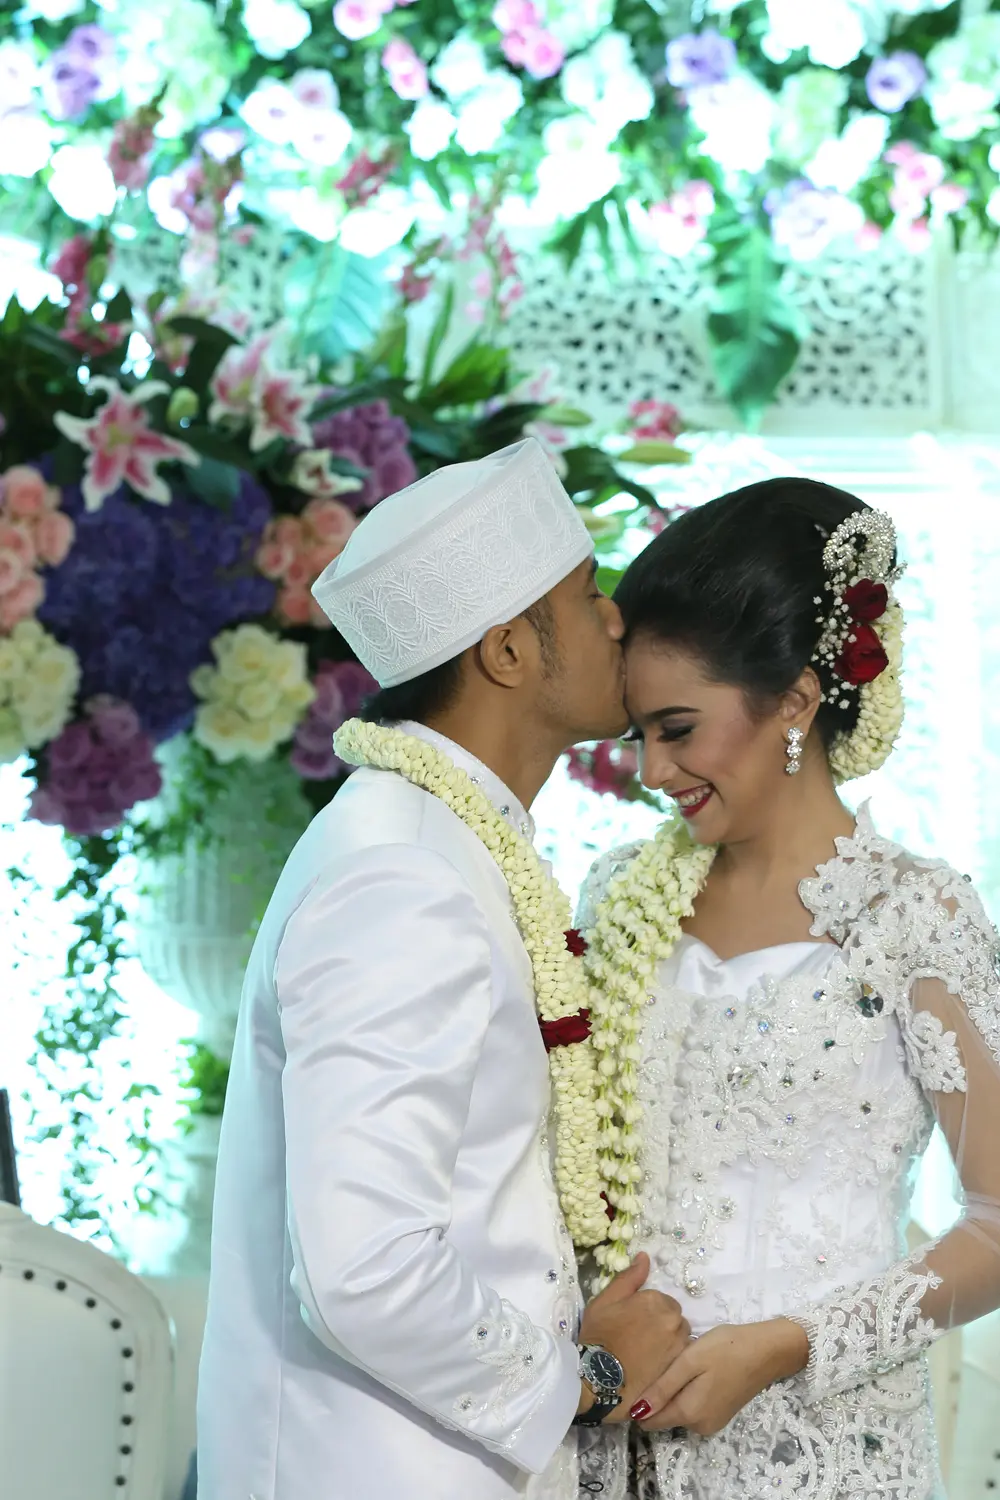 Ciuman kasih sayang Hengky Kurniawan untuk istrinya, Sonya Fatmala (Galih W. Satria/bintang.com)